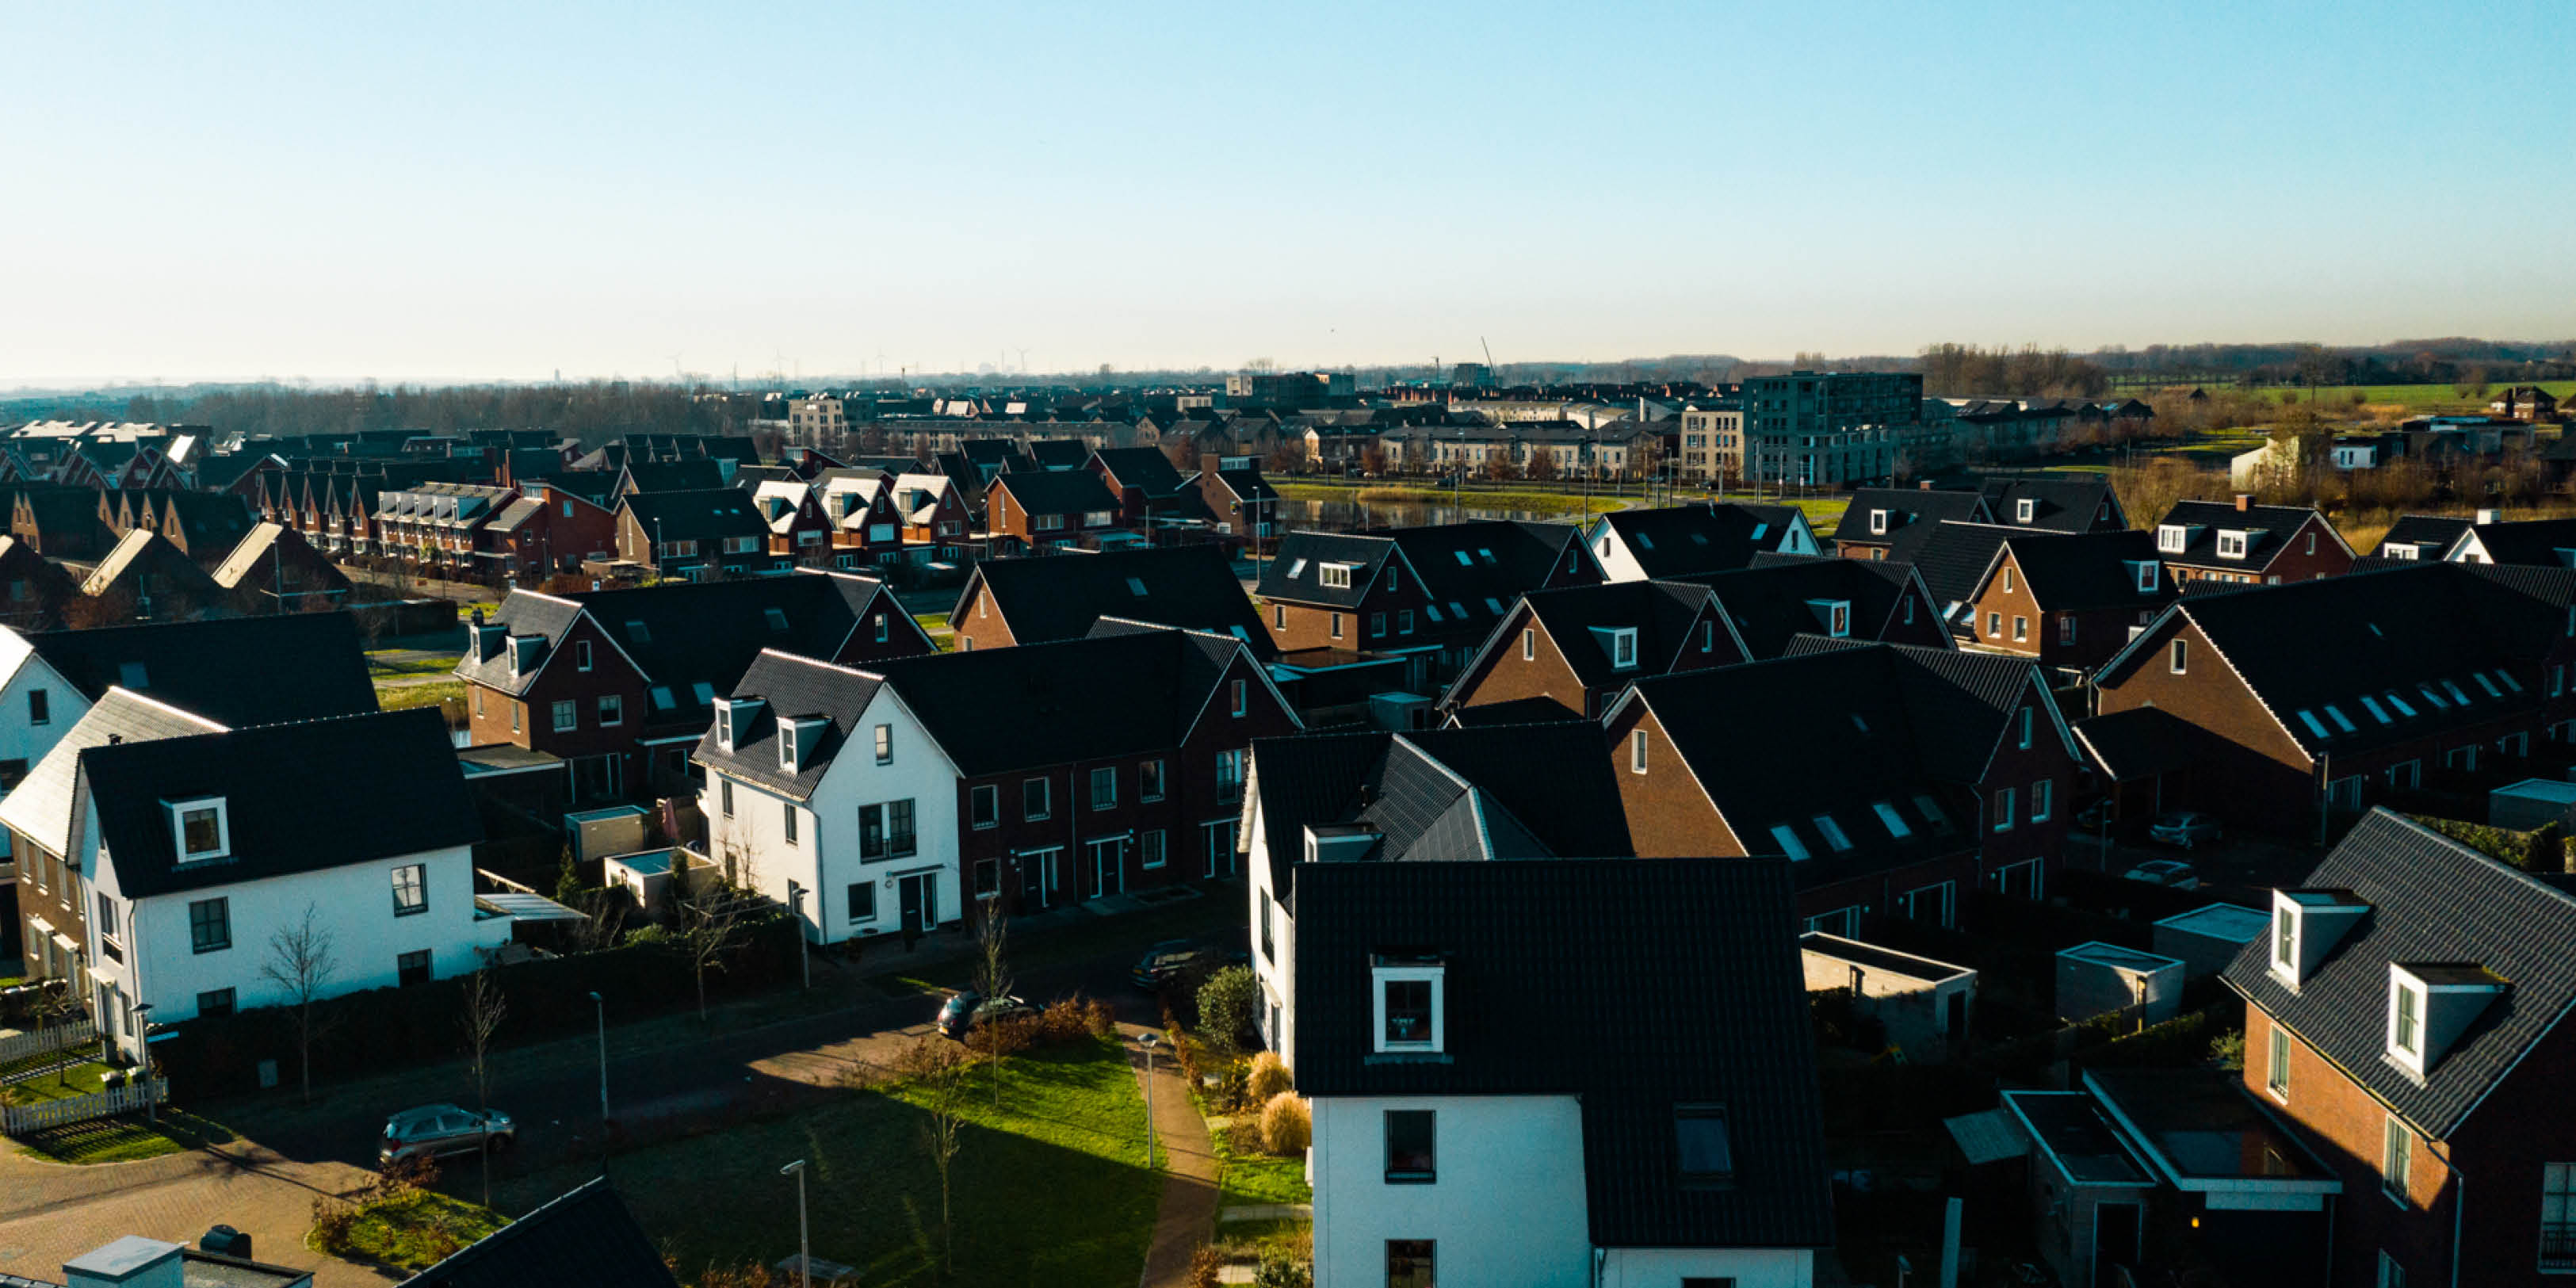 Buurt in beeld - Tuinstad - Woningen luchtfoto 